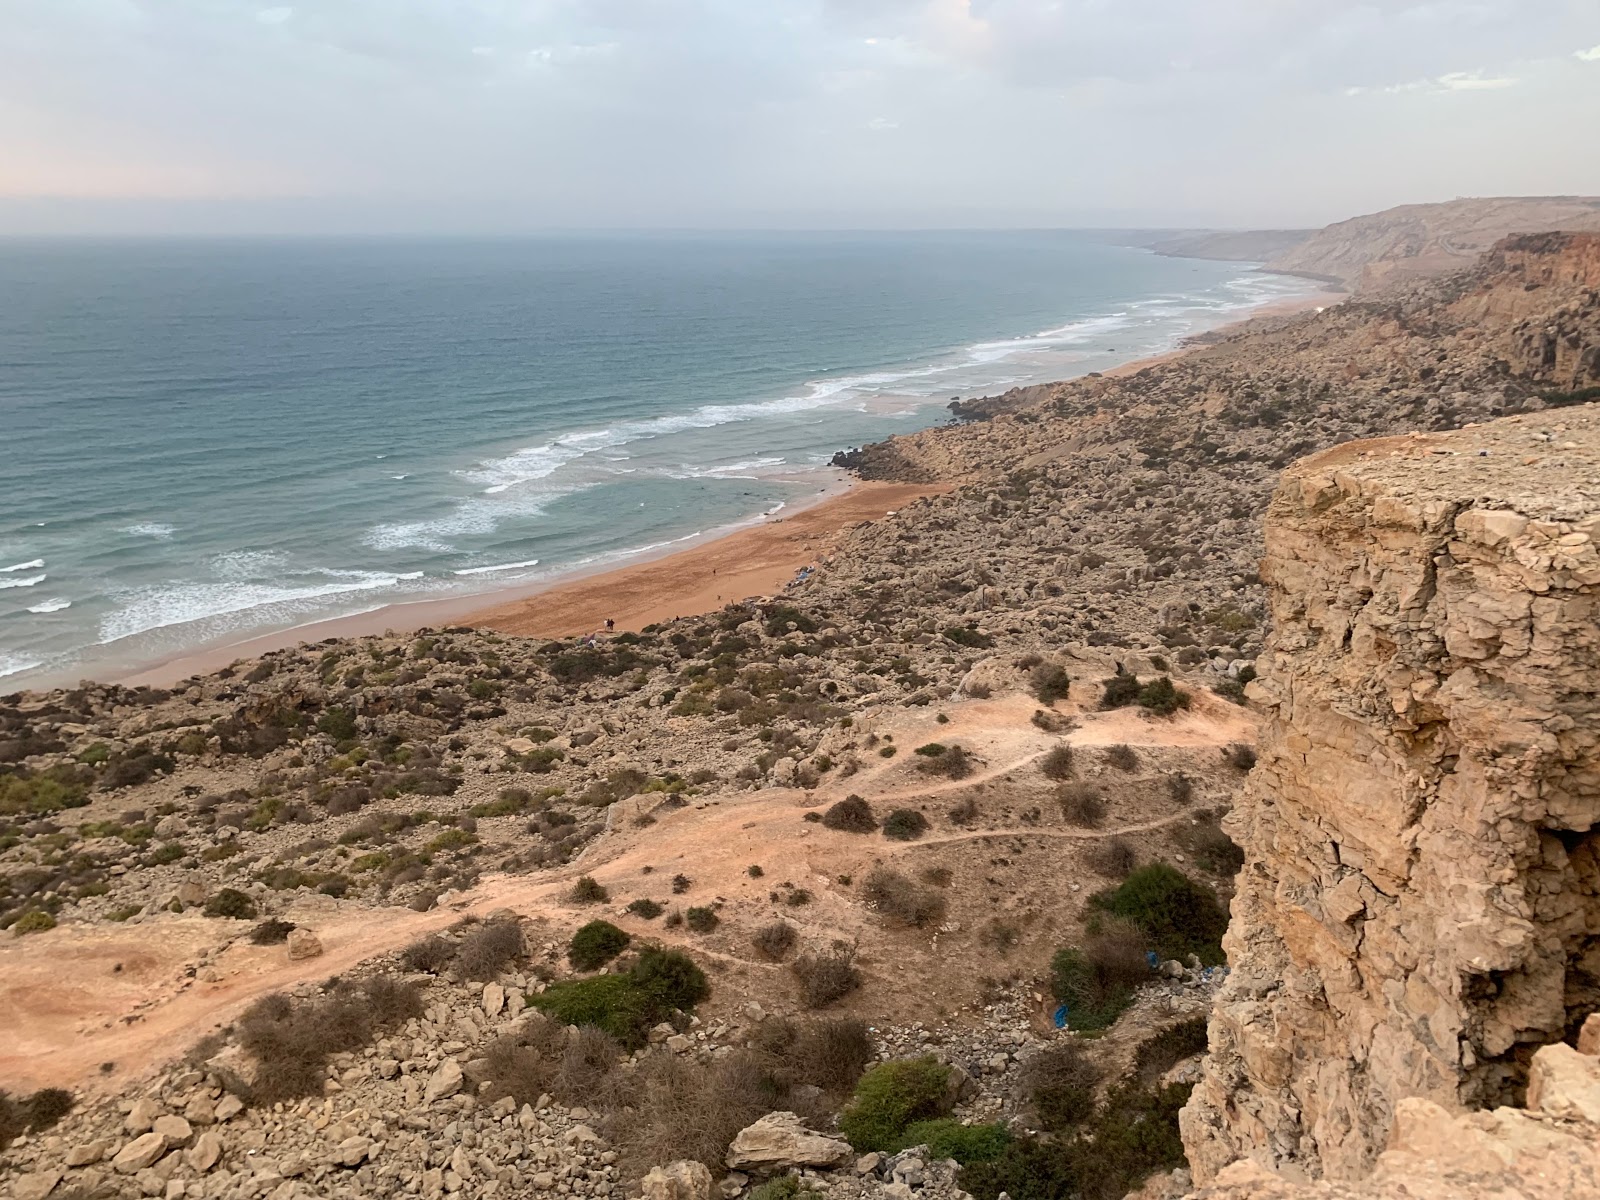 Sidi Boudala'in fotoğrafı parlak ince kum yüzey ile